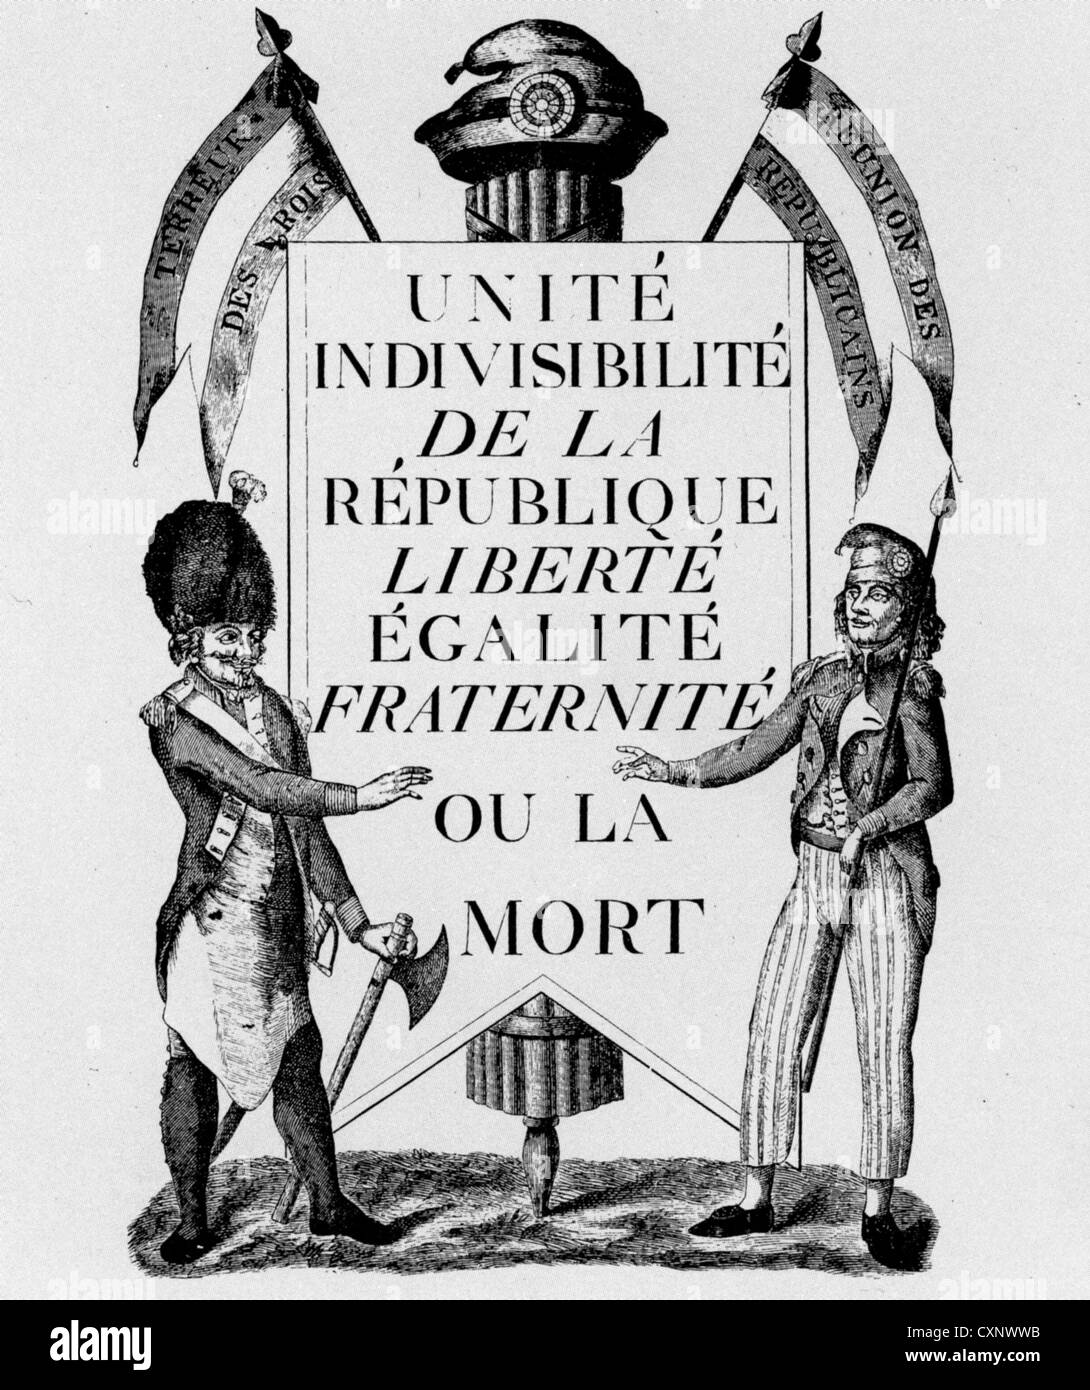 FRANZÖSISCHE REVOLUTION 1789-Poster mit der Formulierung "Untrennbare Einheit der Republik - Freiheit, Gleichheit und Brüderlichkeit oder Tod" Stockfoto